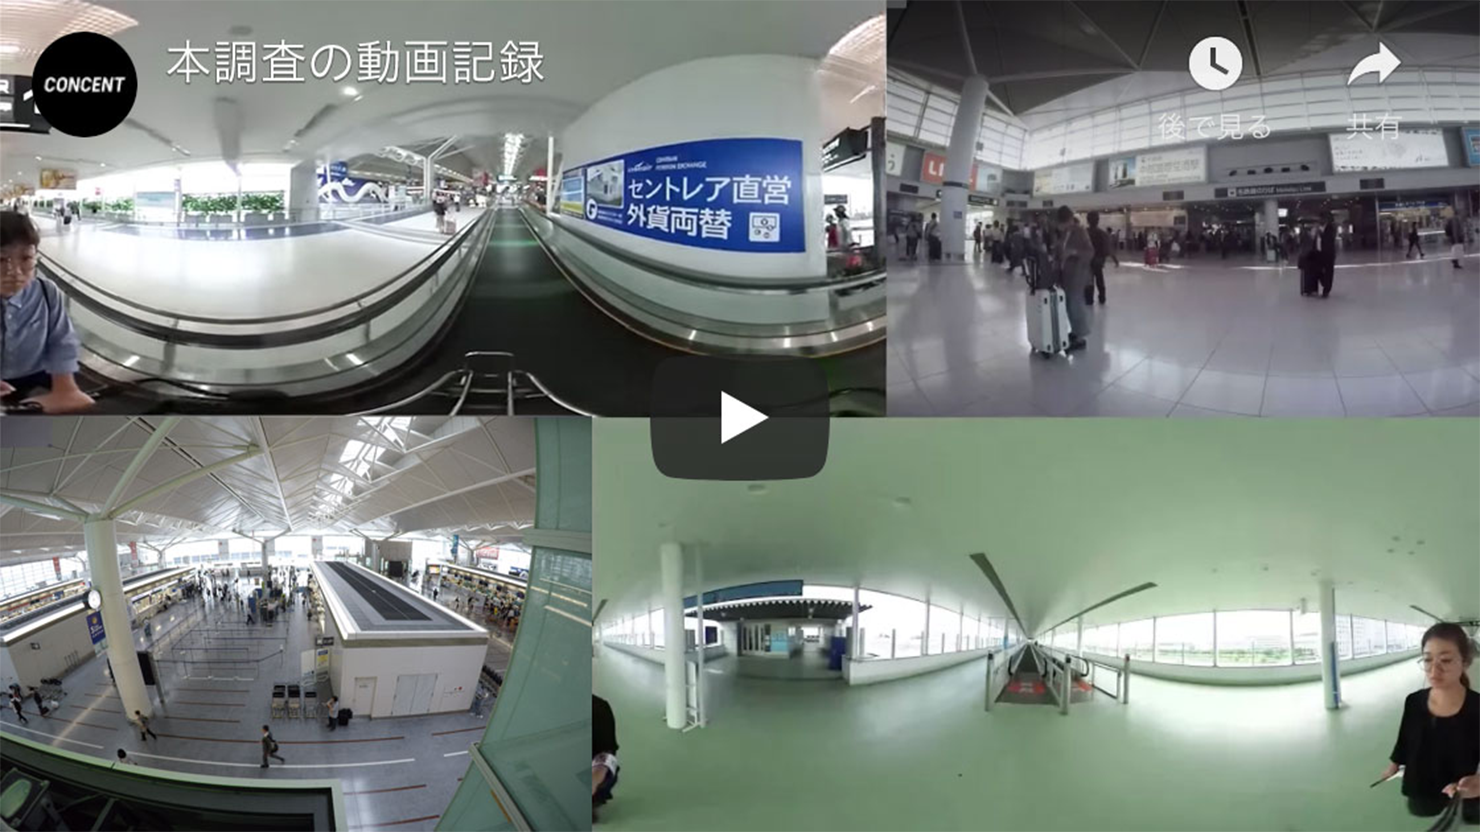 動画キャプチャ。中部国際空港の空港サイン現状課題調査した際の動画記録